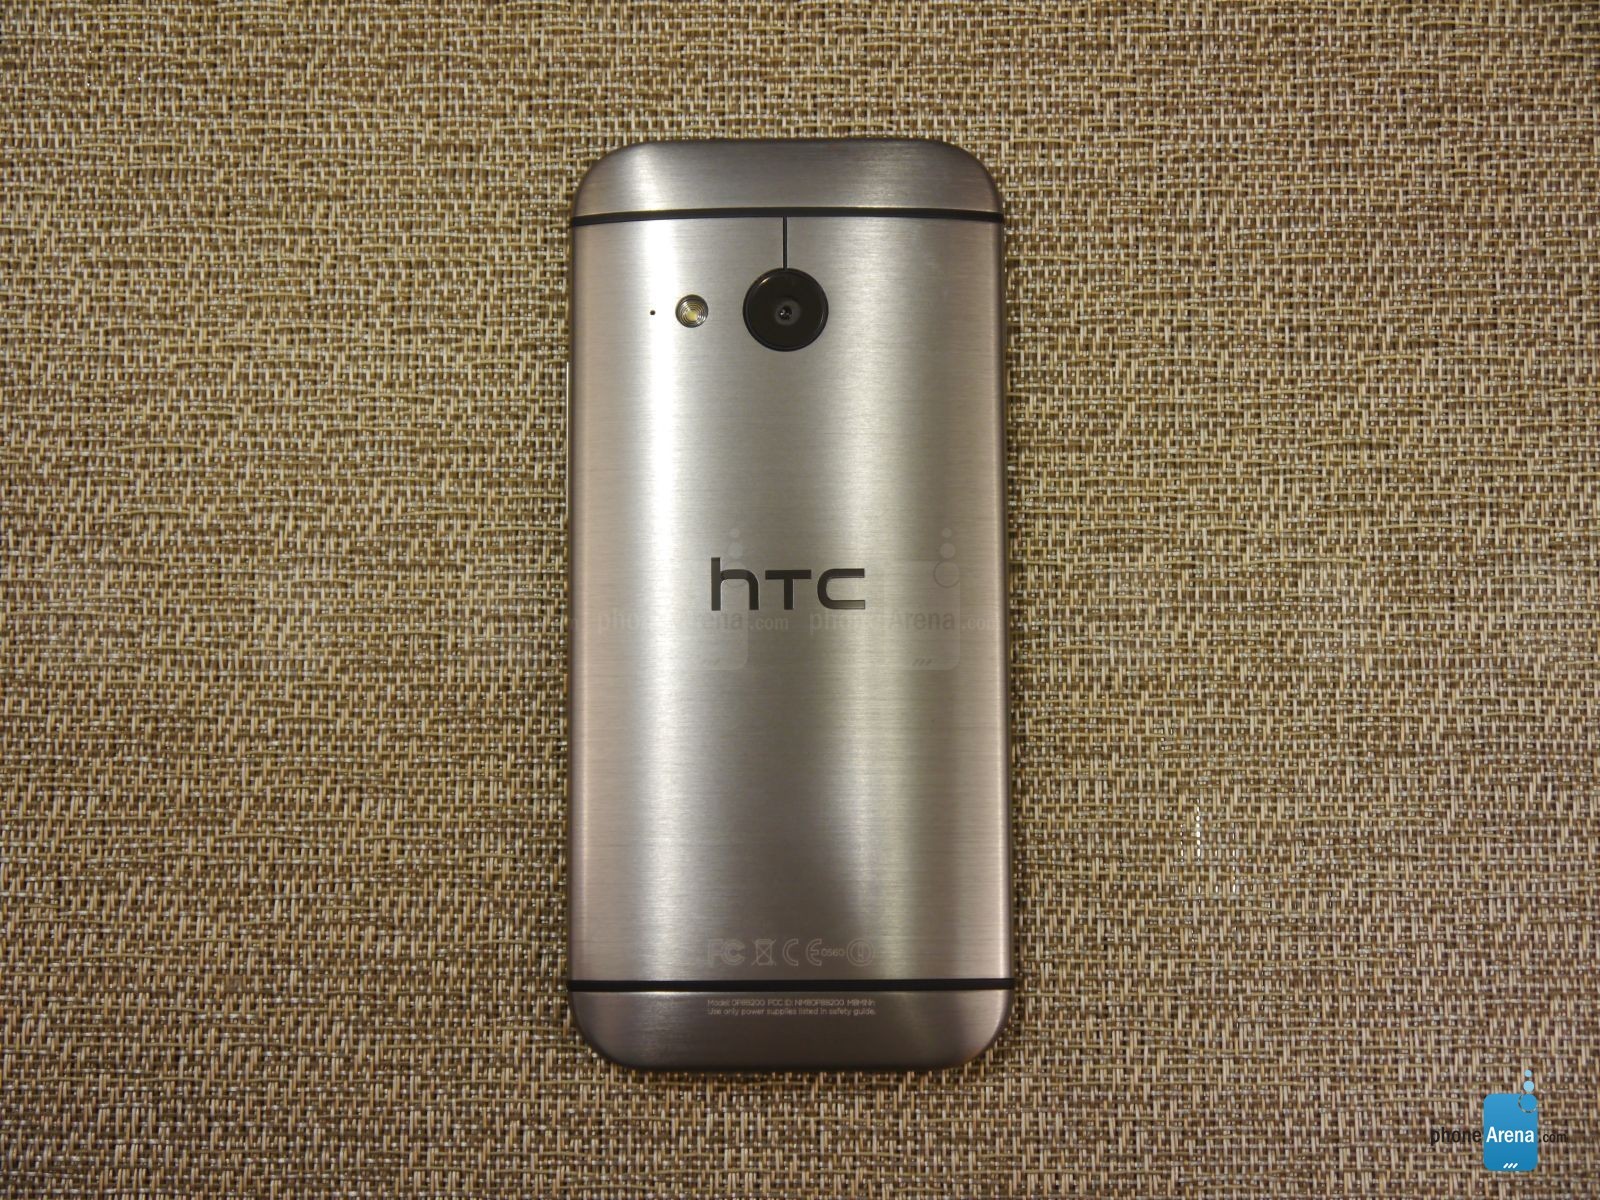 720p高清屏四核 HTC One mini 2初体验(16)